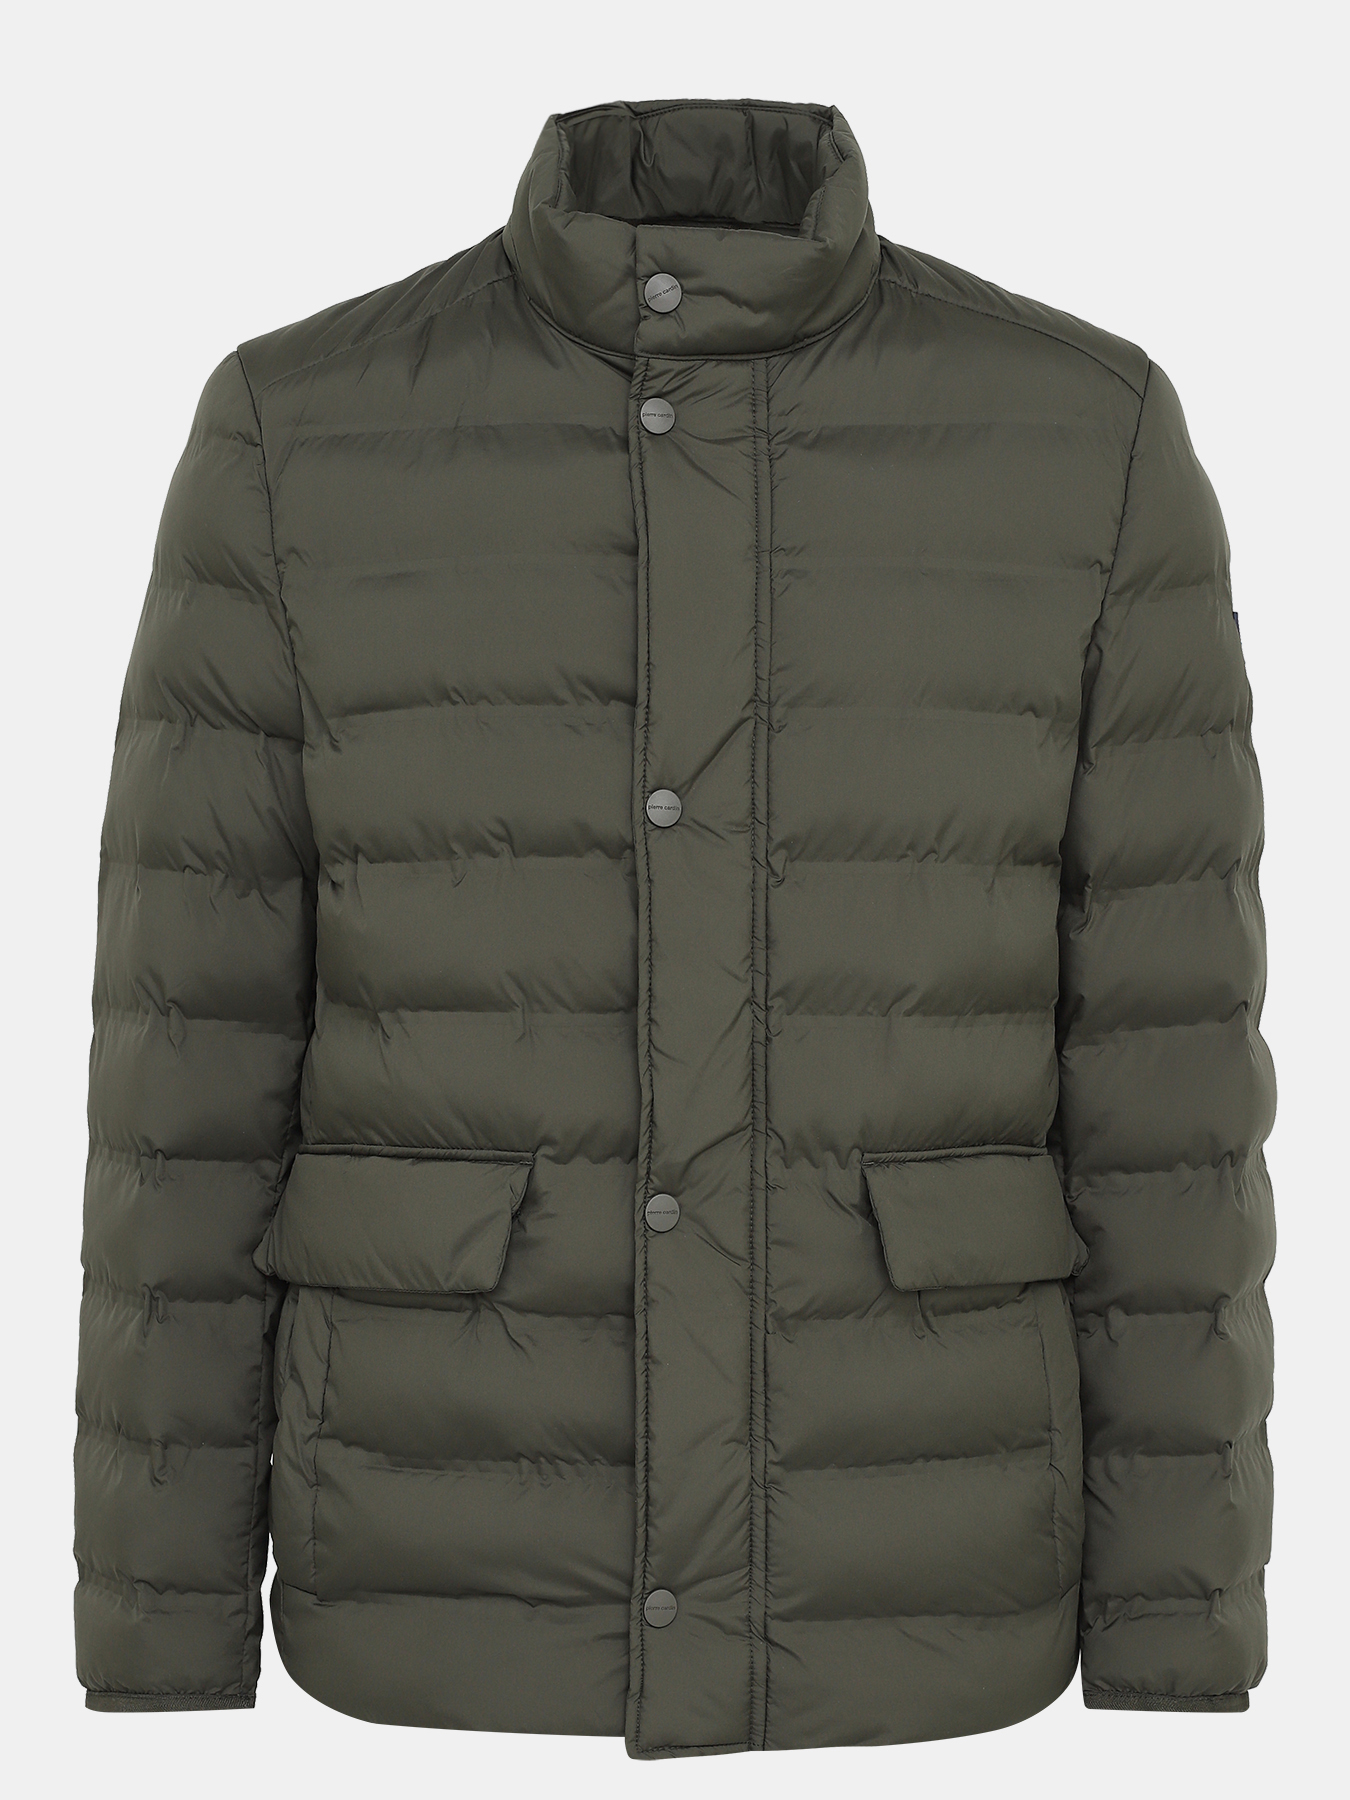 Куртка Pierre Cardin 394132-025, цвет хаки, размер 48